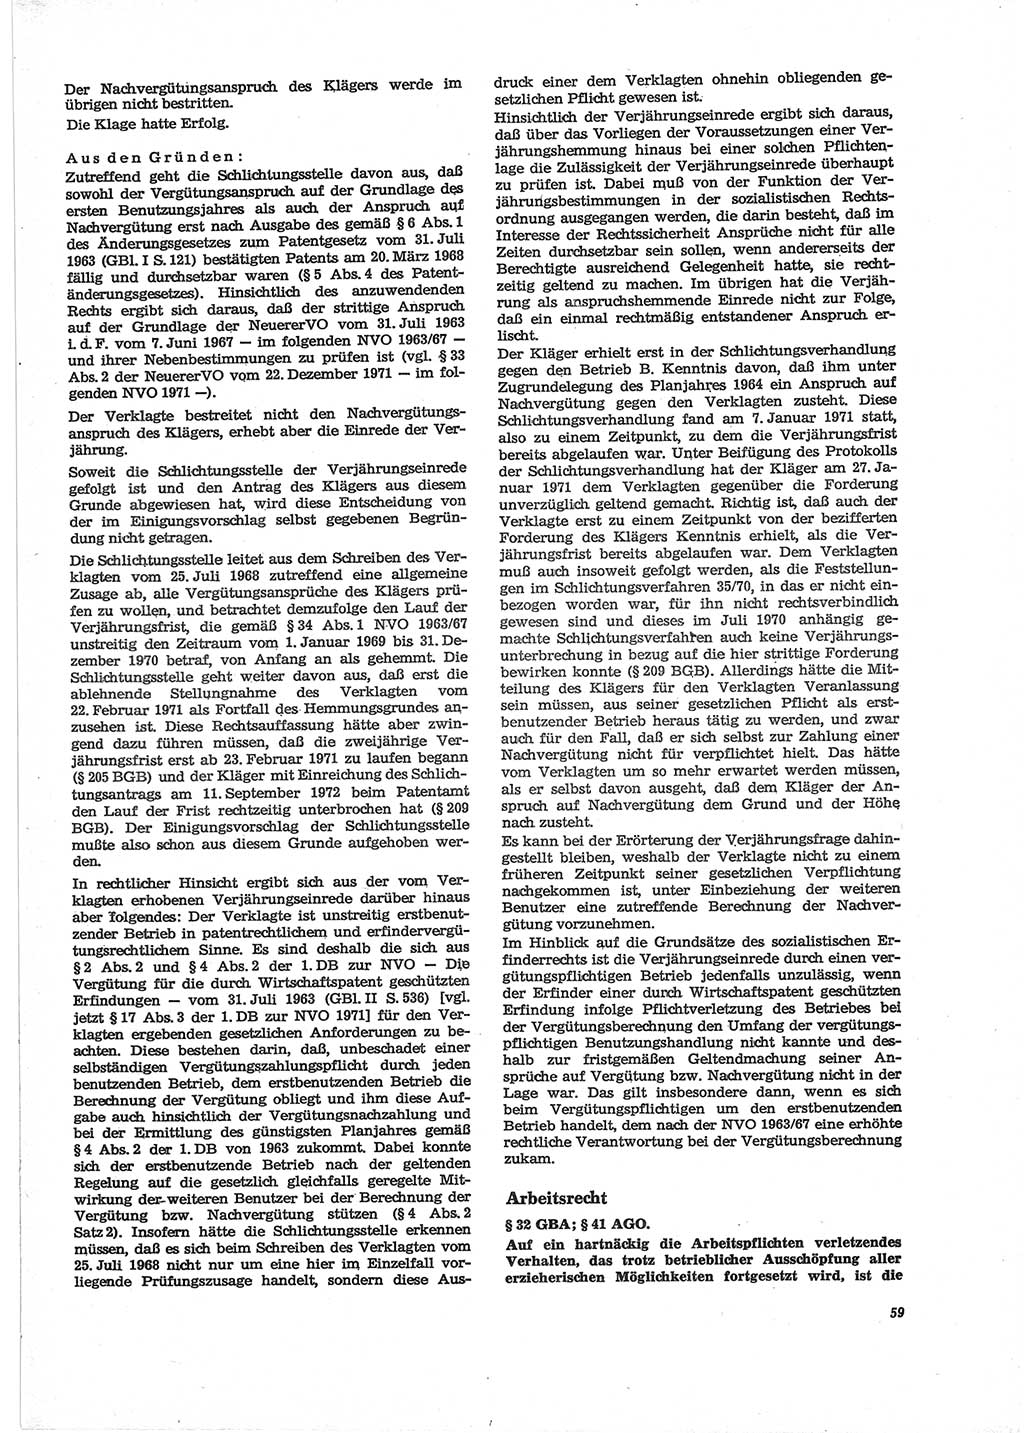 Neue Justiz (NJ), Zeitschrift für Recht und Rechtswissenschaft [Deutsche Demokratische Republik (DDR)], 28. Jahrgang 1974, Seite 59 (NJ DDR 1974, S. 59)